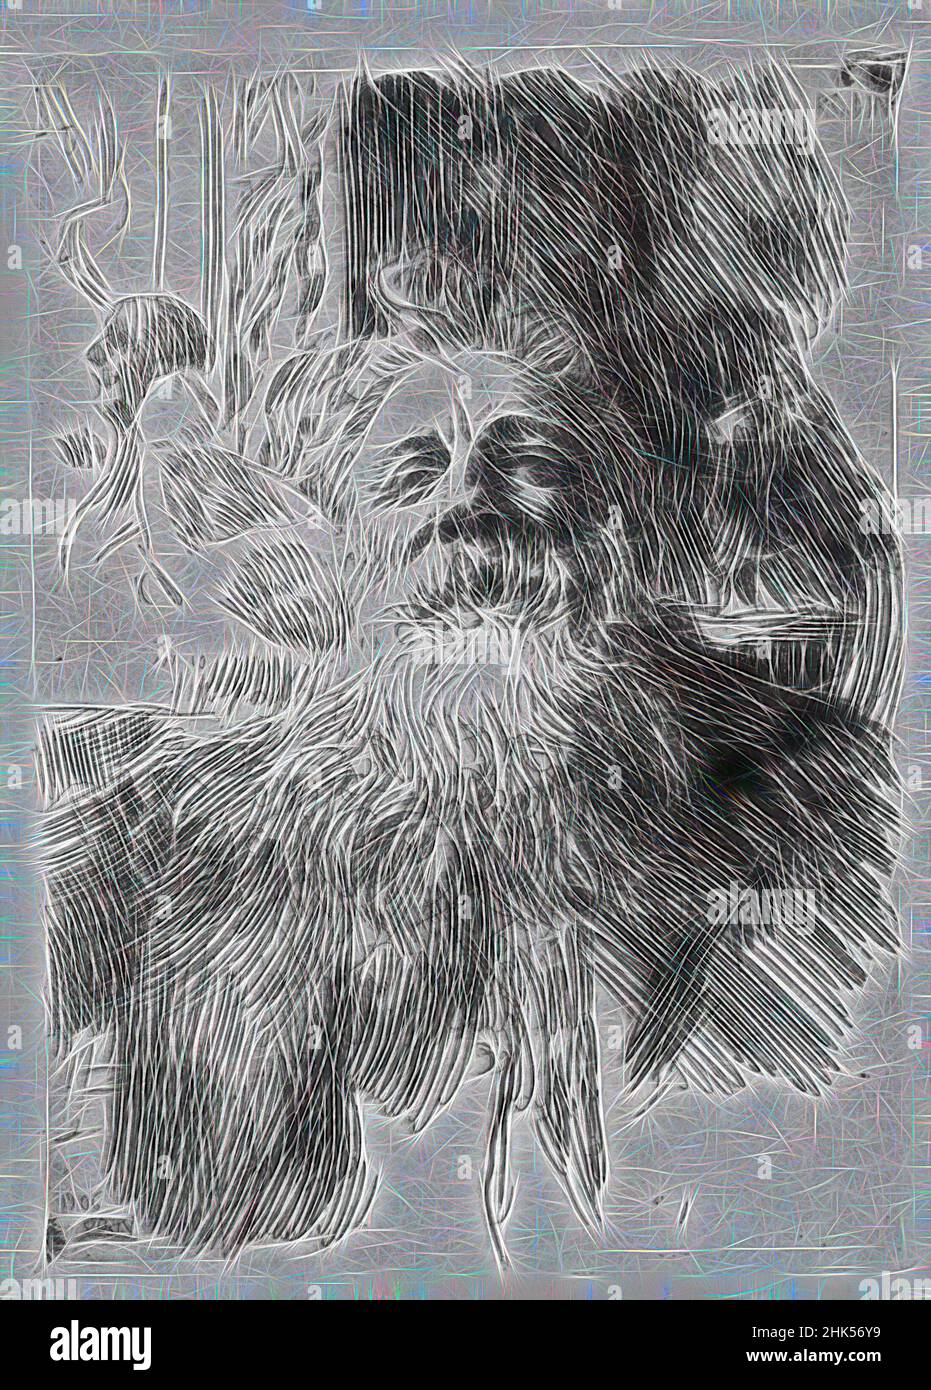 Inspirado por Auguste Rodin, Anders Zorn, Sueco, 1860-1920, Grabado sobre papel, 1906, Imagen: 8 3/8 x 6 1/8 pulg., 21,2 x 15,5 cm, retrato del artista, Belle Époque, retrato de un artista, Reimaginado por Artótop. Arte clásico reinventado con un toque moderno. Diseño de brillo cálido y alegre y luminosidad e radiación de rayos de luz. Fotografía inspirada en el surrealismo y el futurismo, que abarca la energía dinámica de la tecnología moderna, el movimiento, la velocidad y la revolución de la cultura Foto de stock